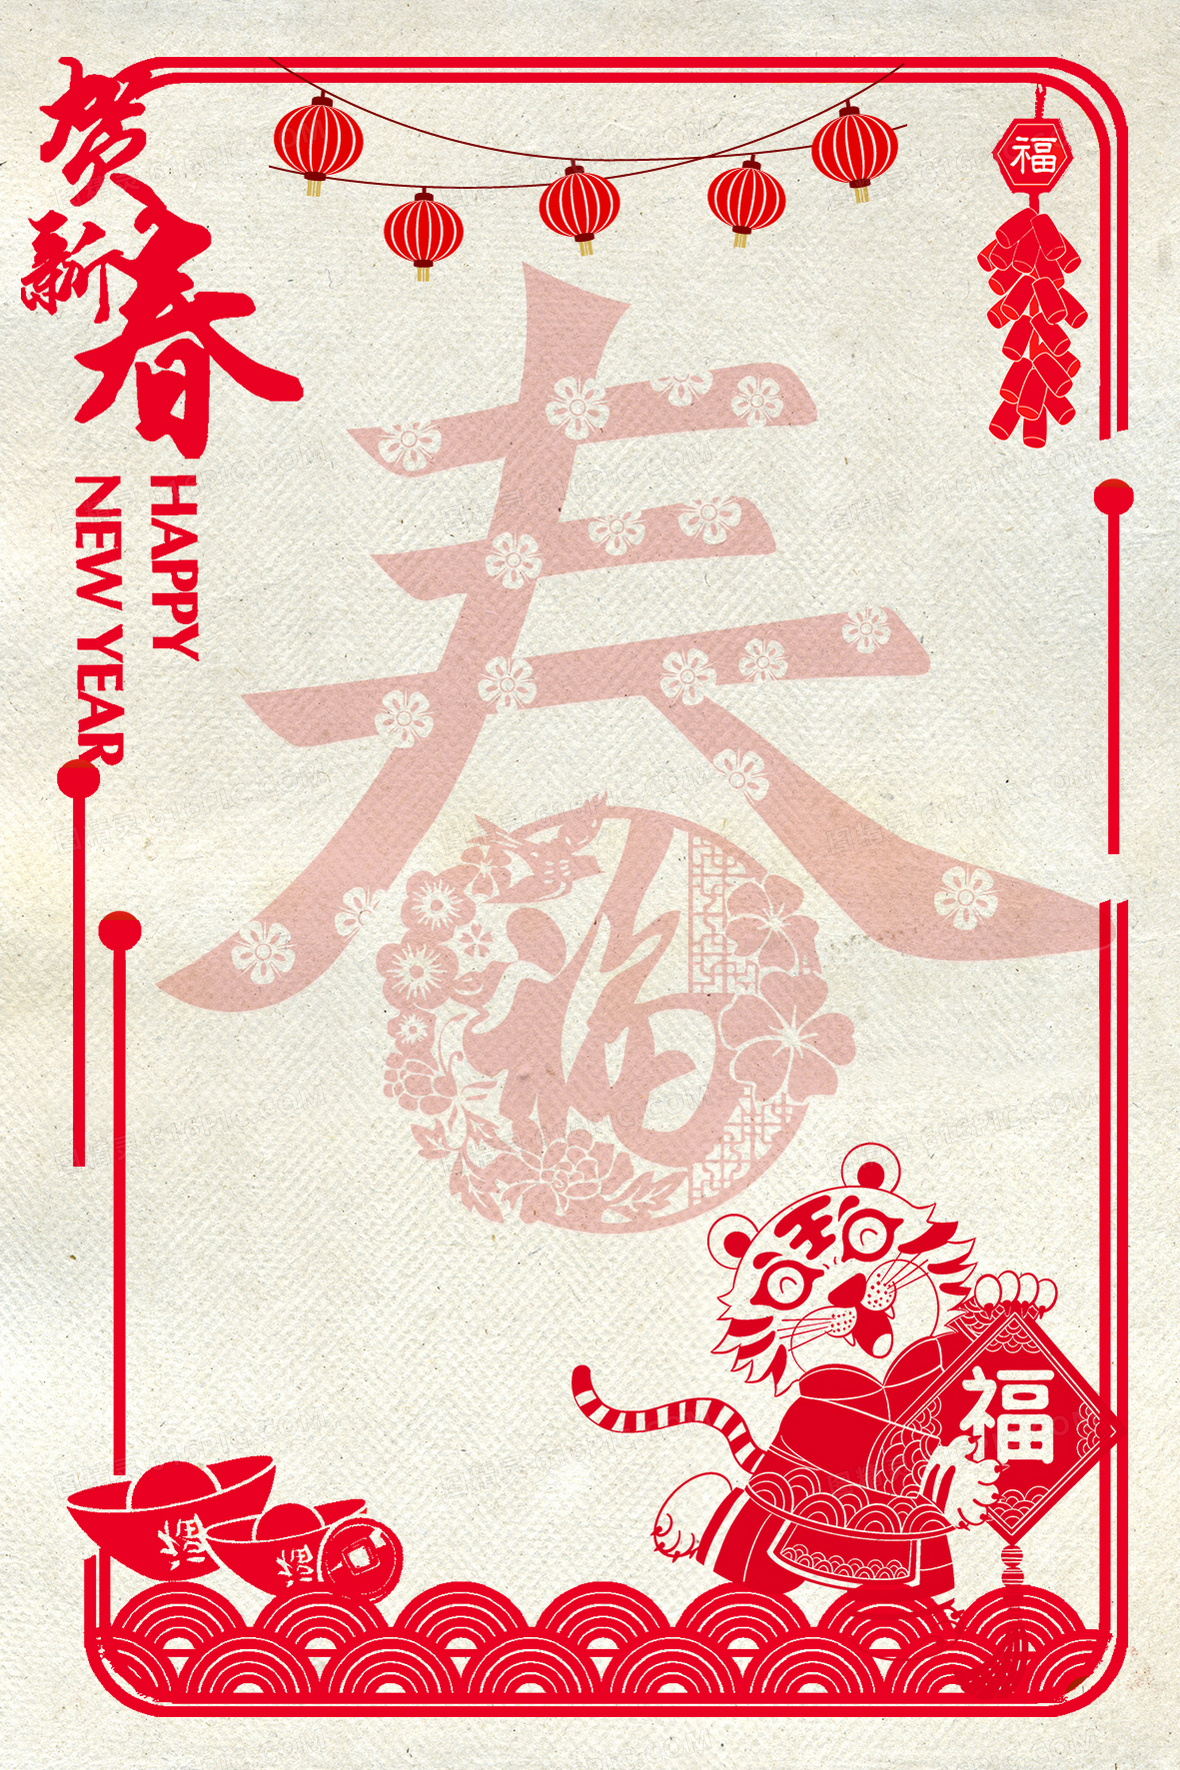 虎年春节背景背景图片下载 免费高清虎年春节背景背景设计素材 图精灵